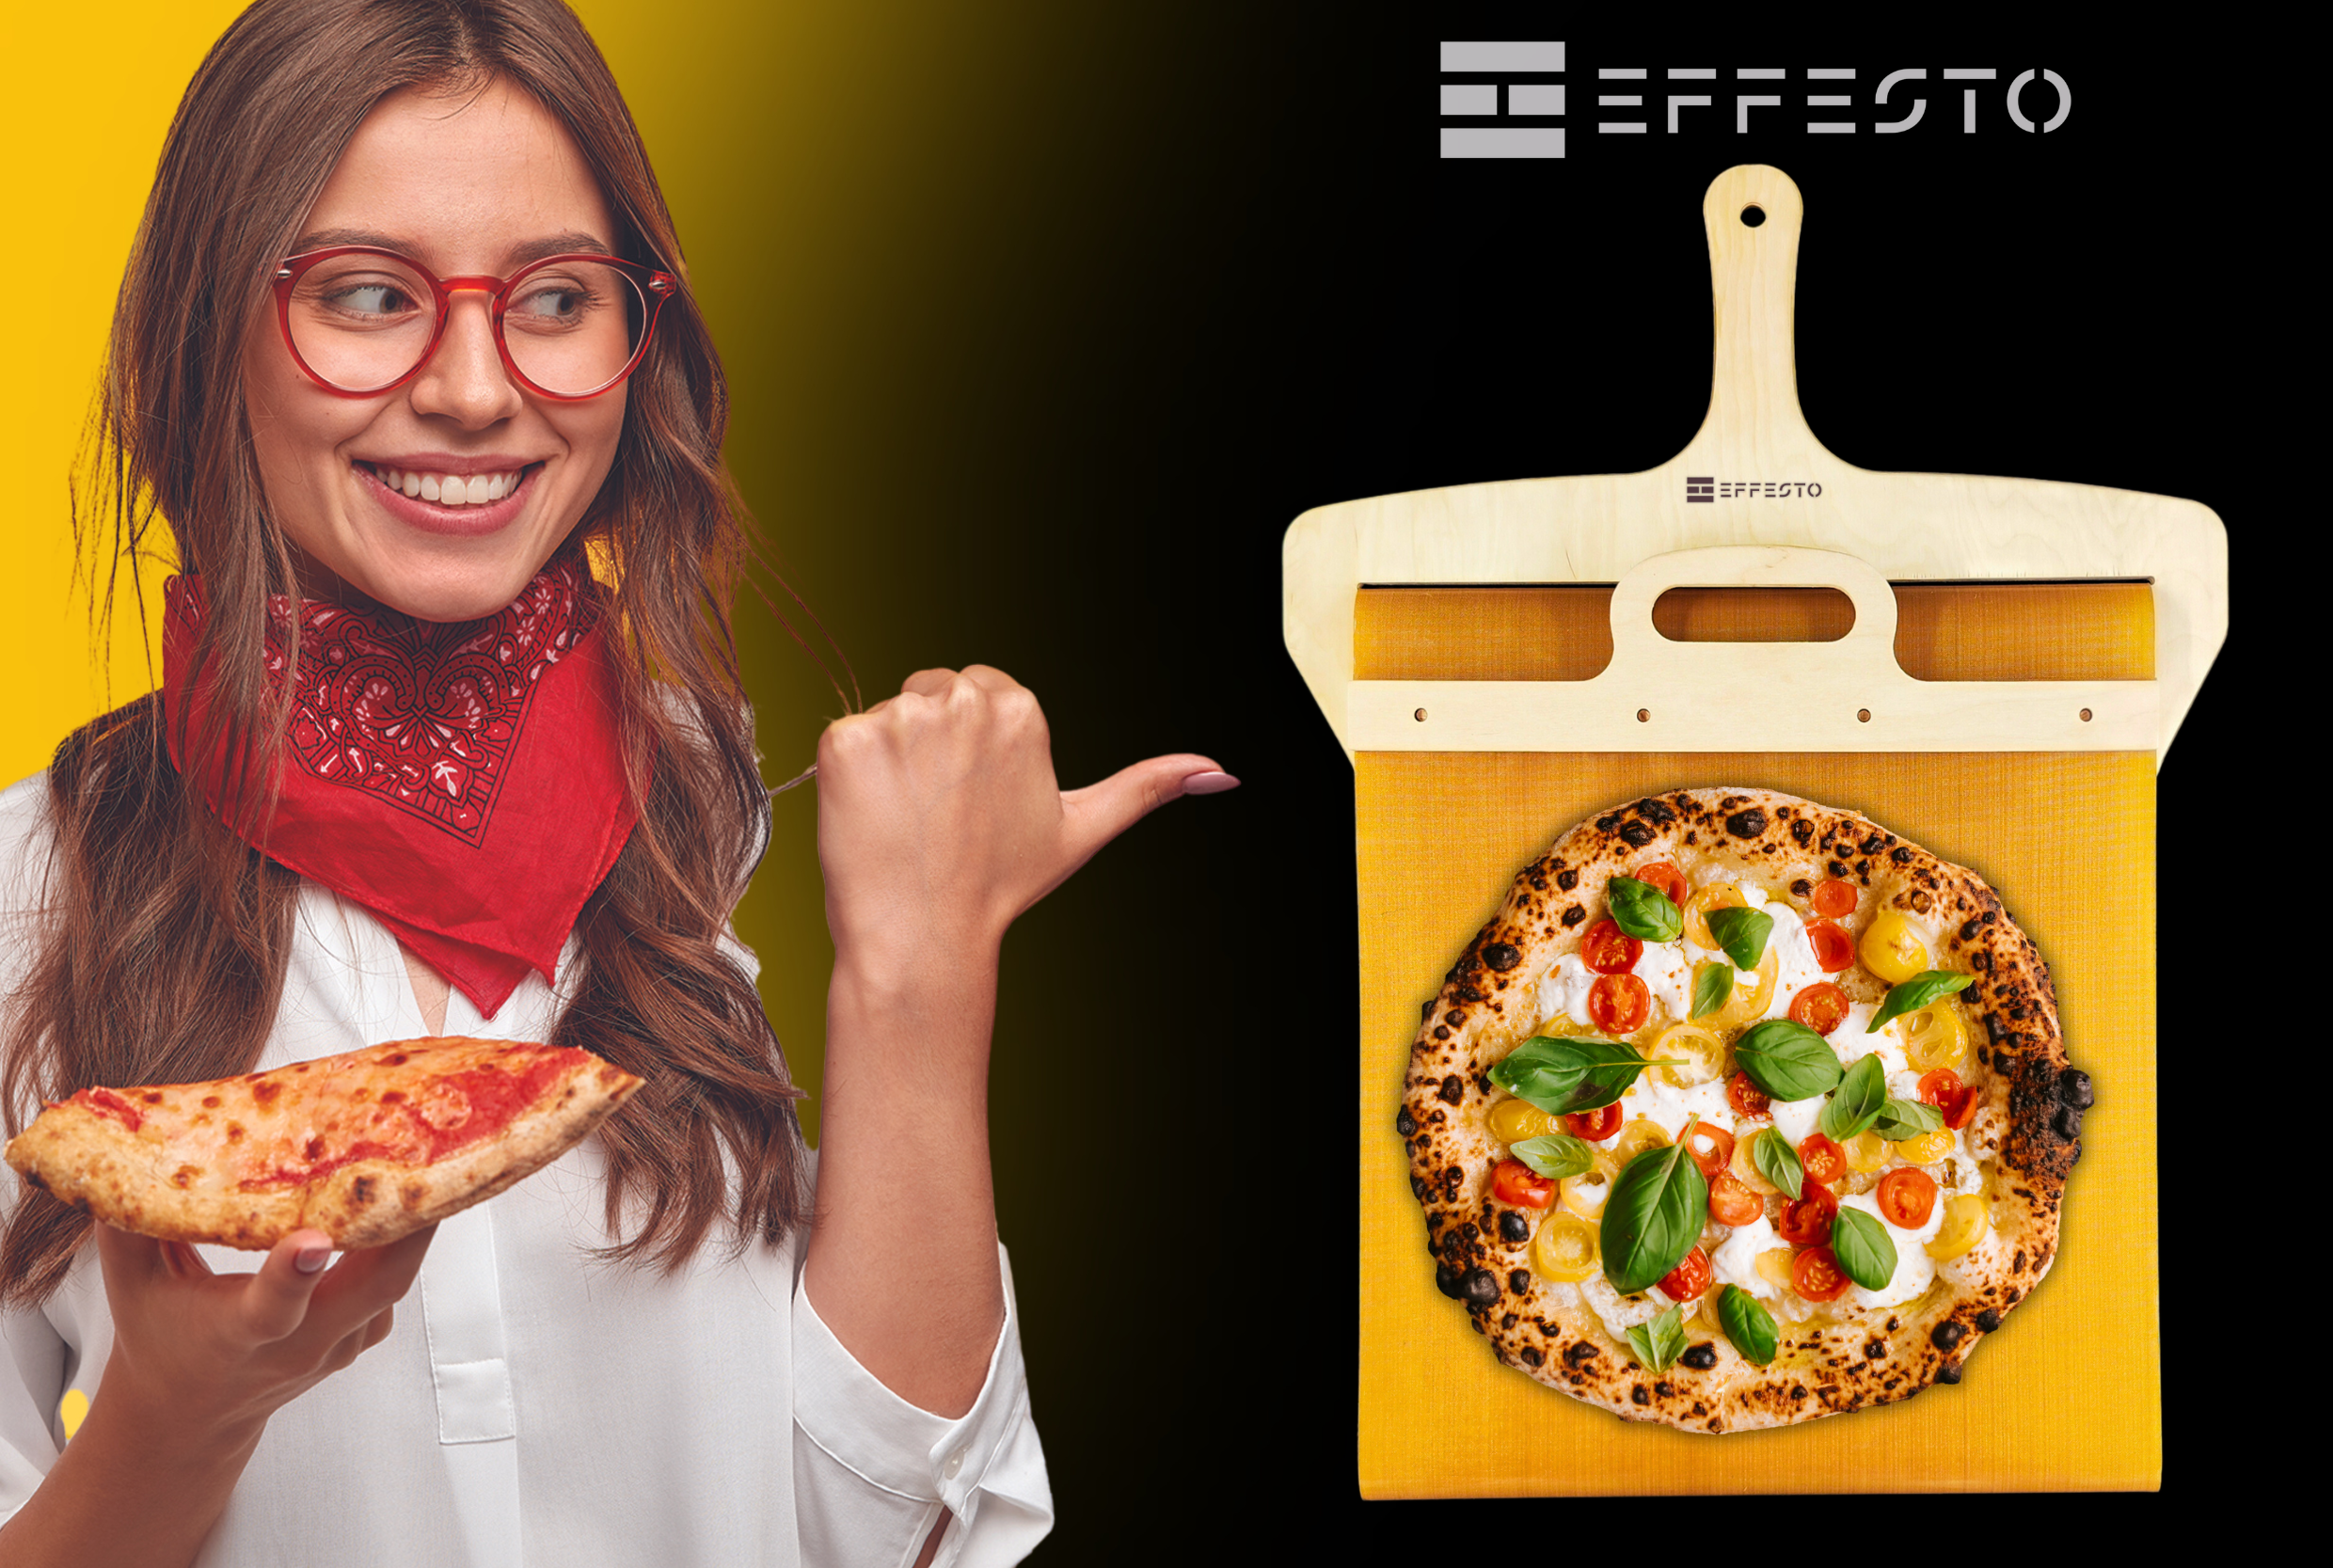 Pala per pizza scorrevole translante @EFFESTO EFFESTO pala barella pe